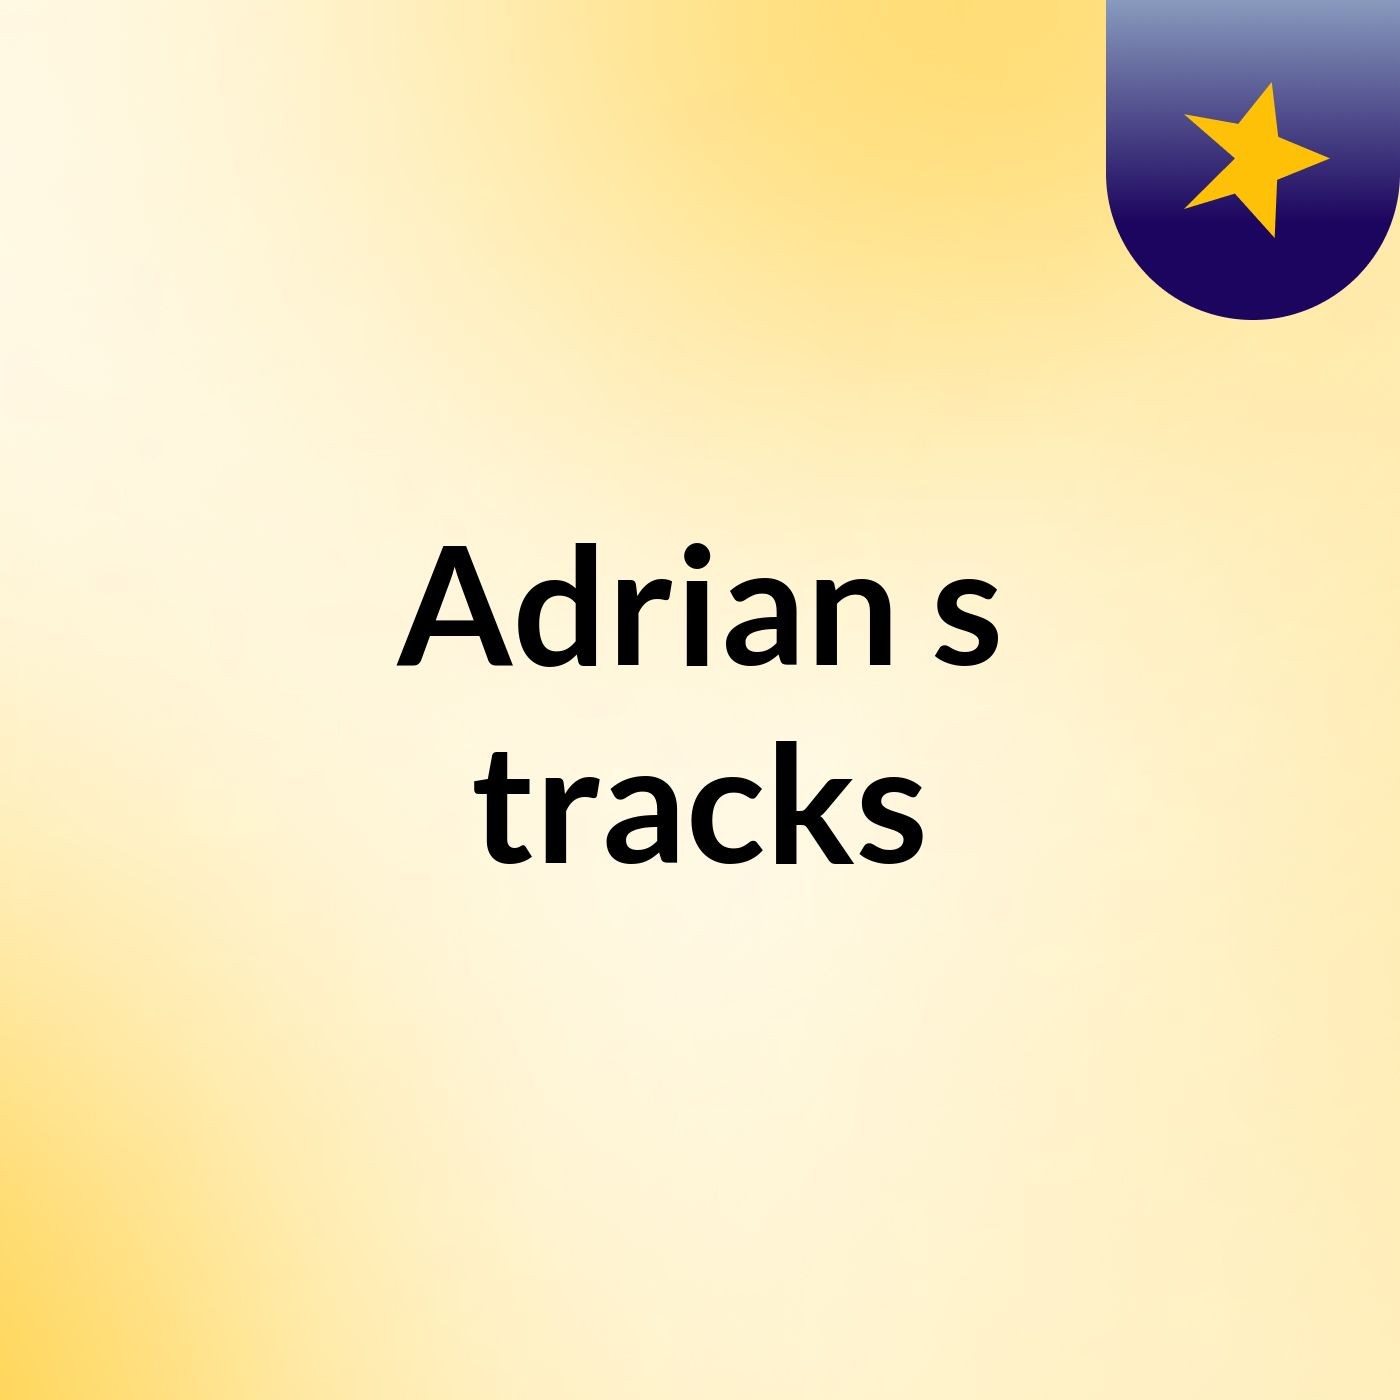 Adrian's tracks